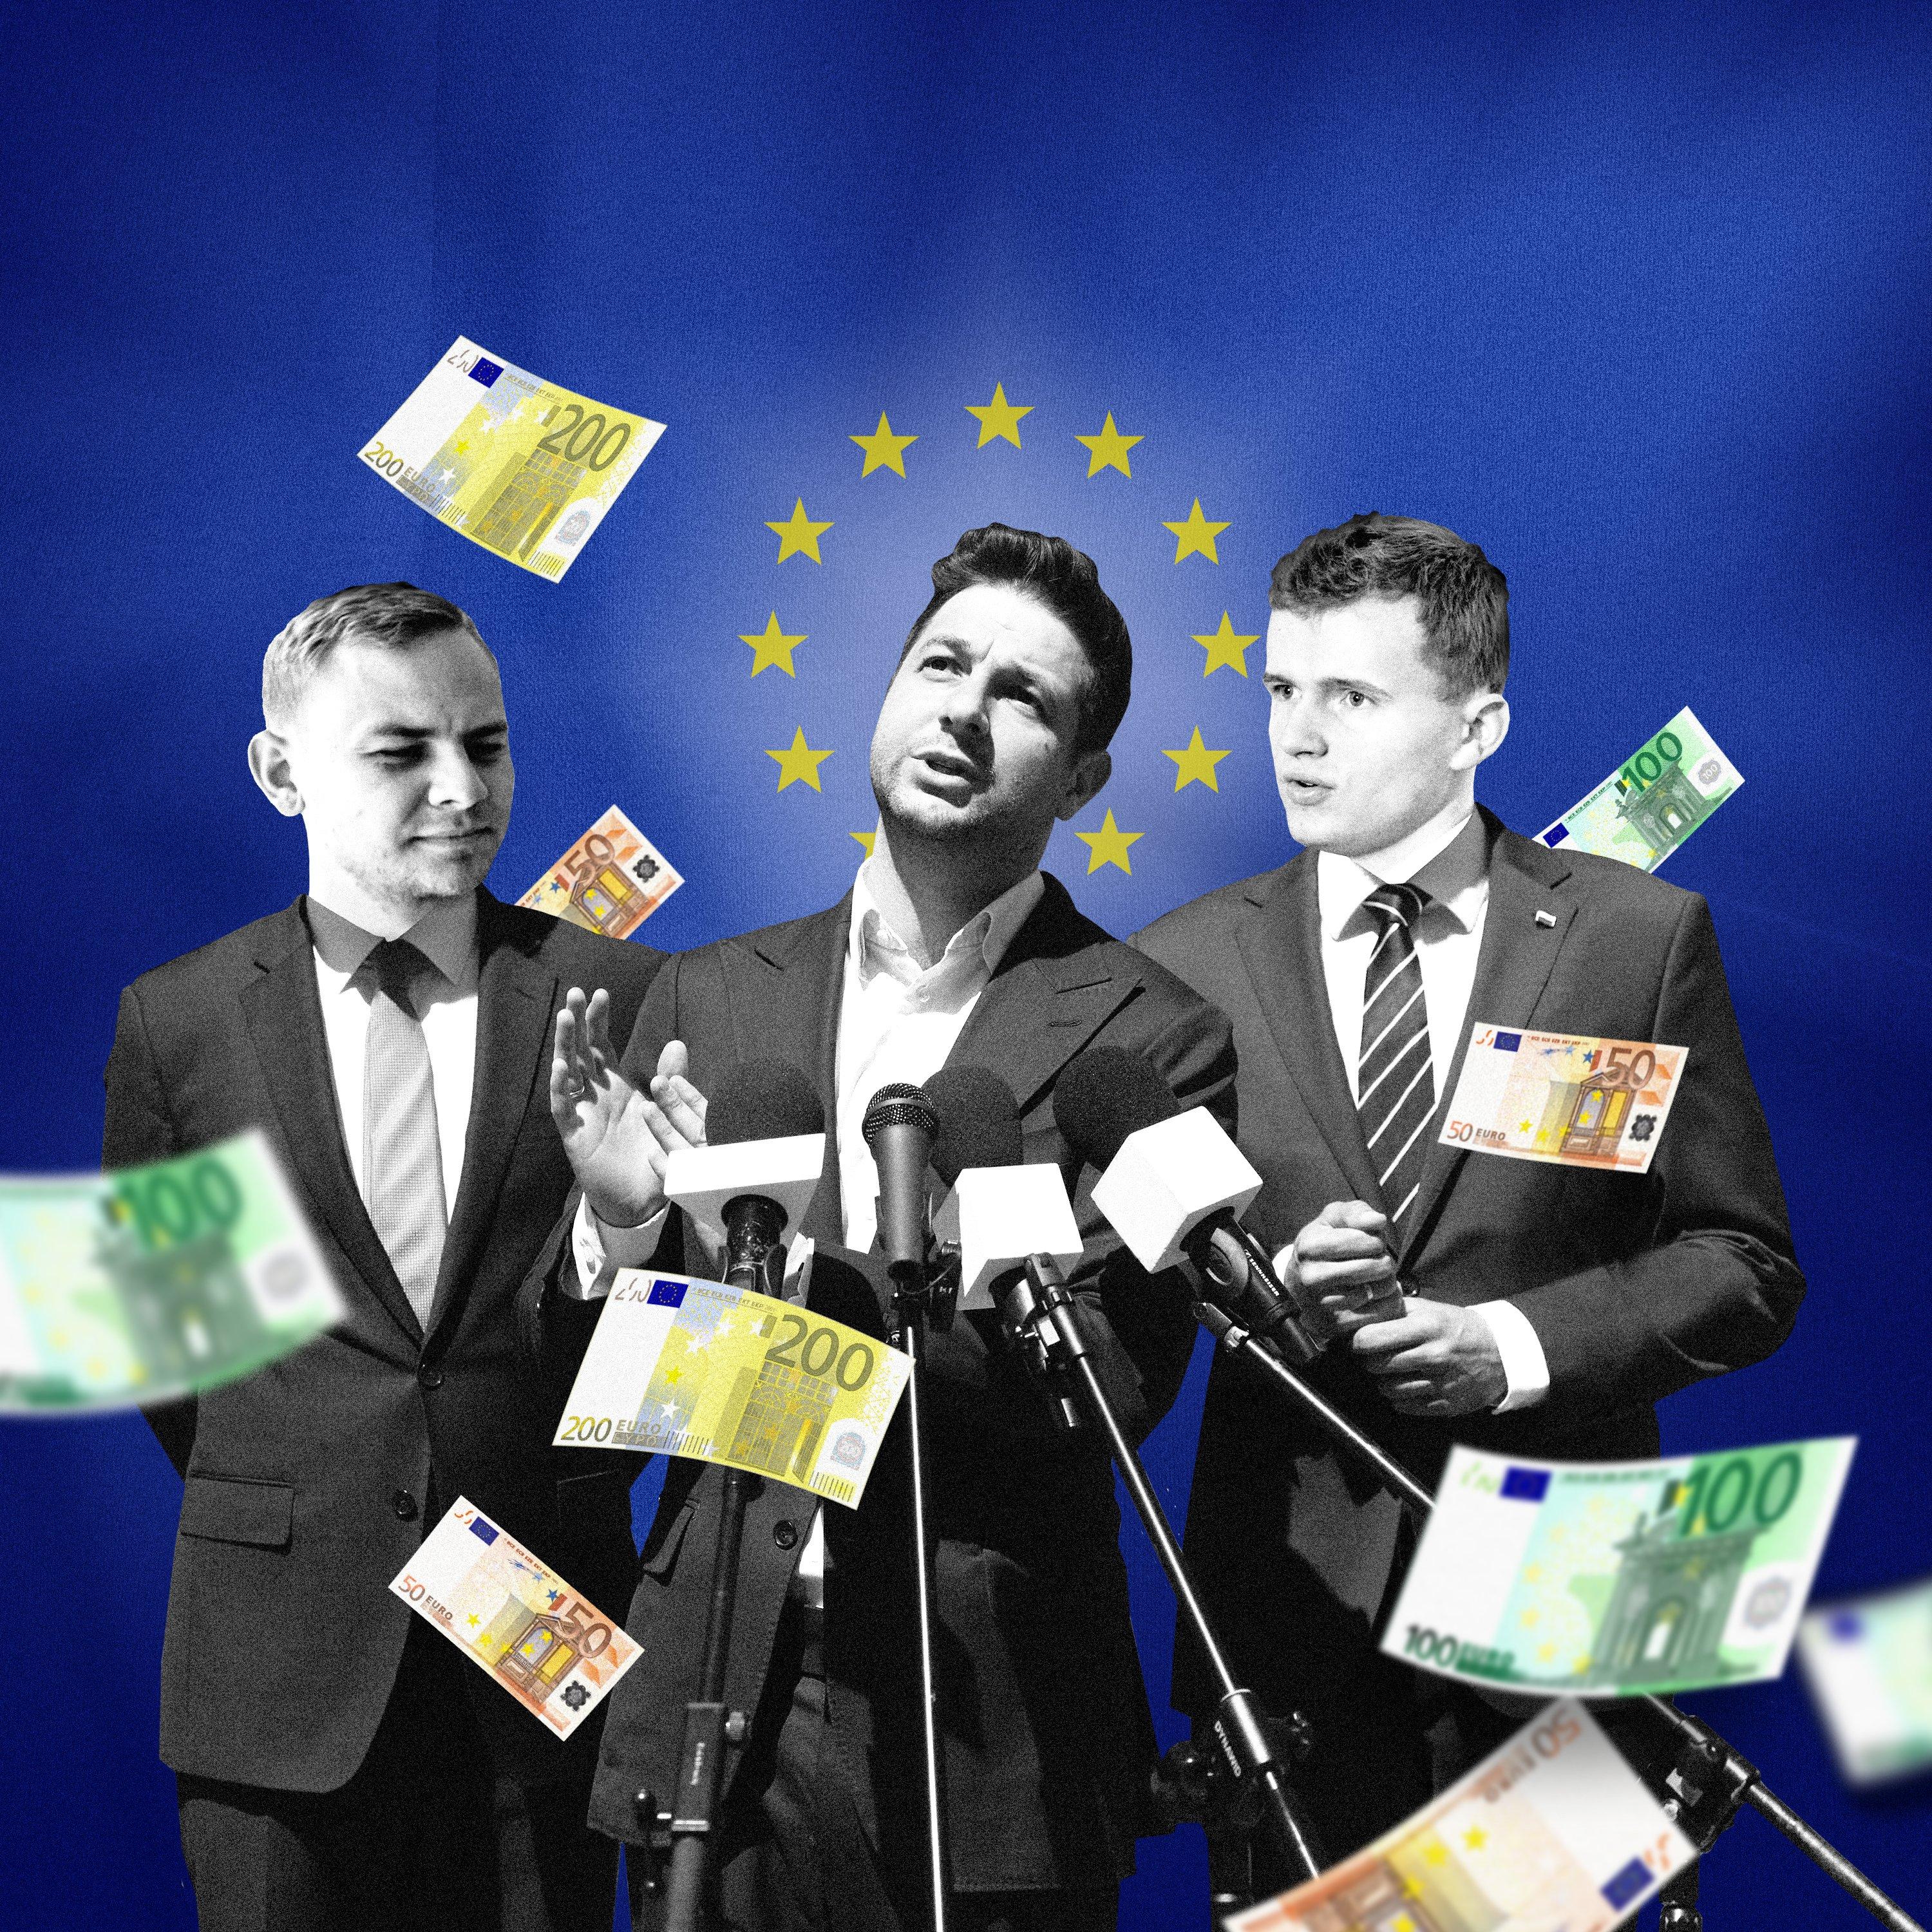 Ilustracja przedstawiająca europosła Patryka Jakiego i jego kolegów, którzy zarobili na kontraktach z EKR: Oliwera Kubickiego i Marcina Rola. Pokazani są na tle flagi UE i wśród fruwających banknotów euro.